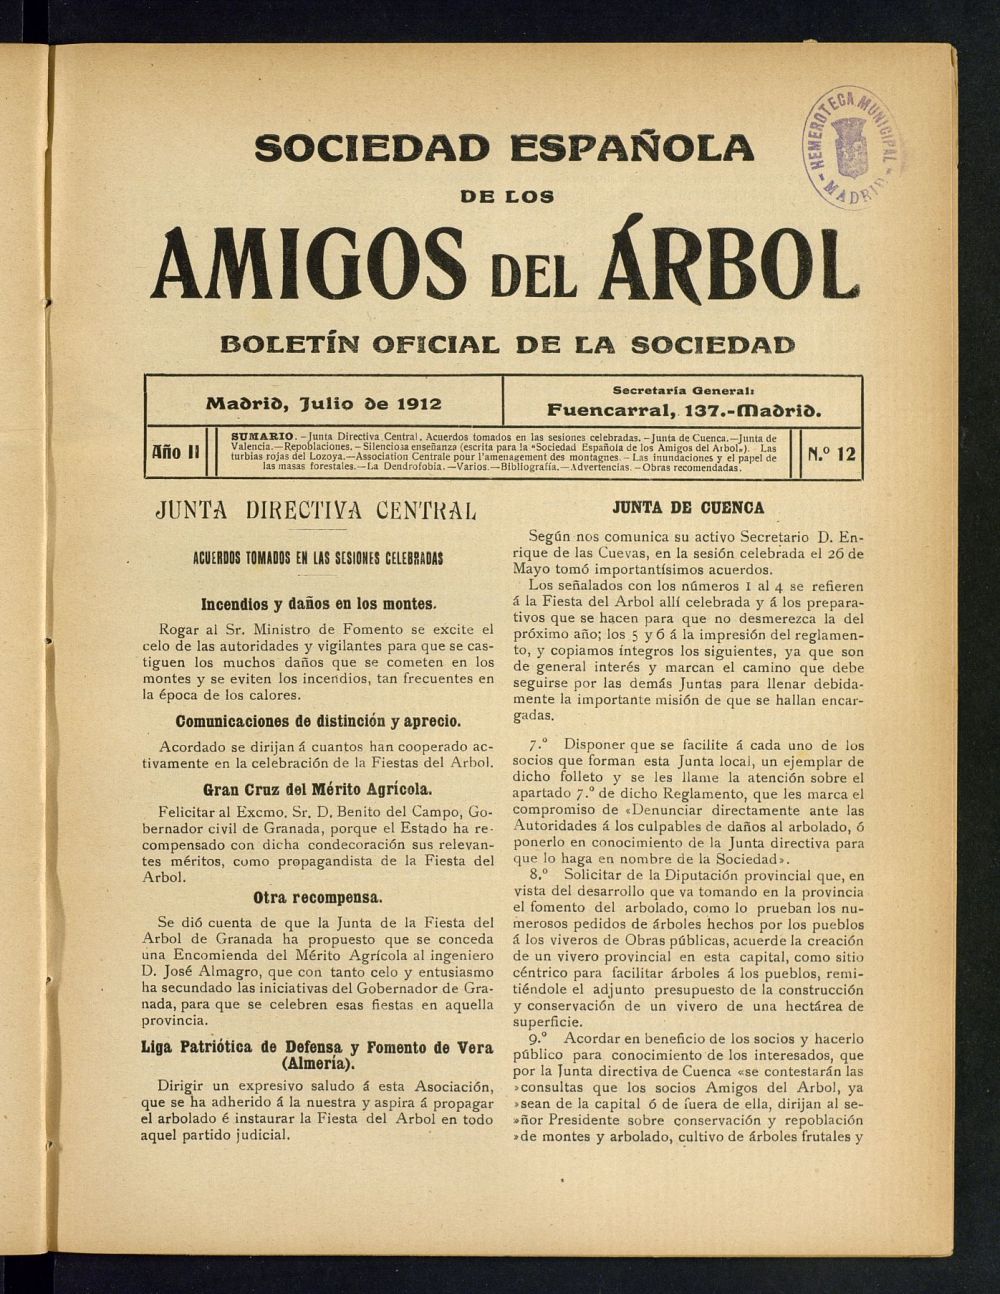 Boletn Comisin organizadora de la Sociedad Espaola de los amigos del rbol de julio de 1912